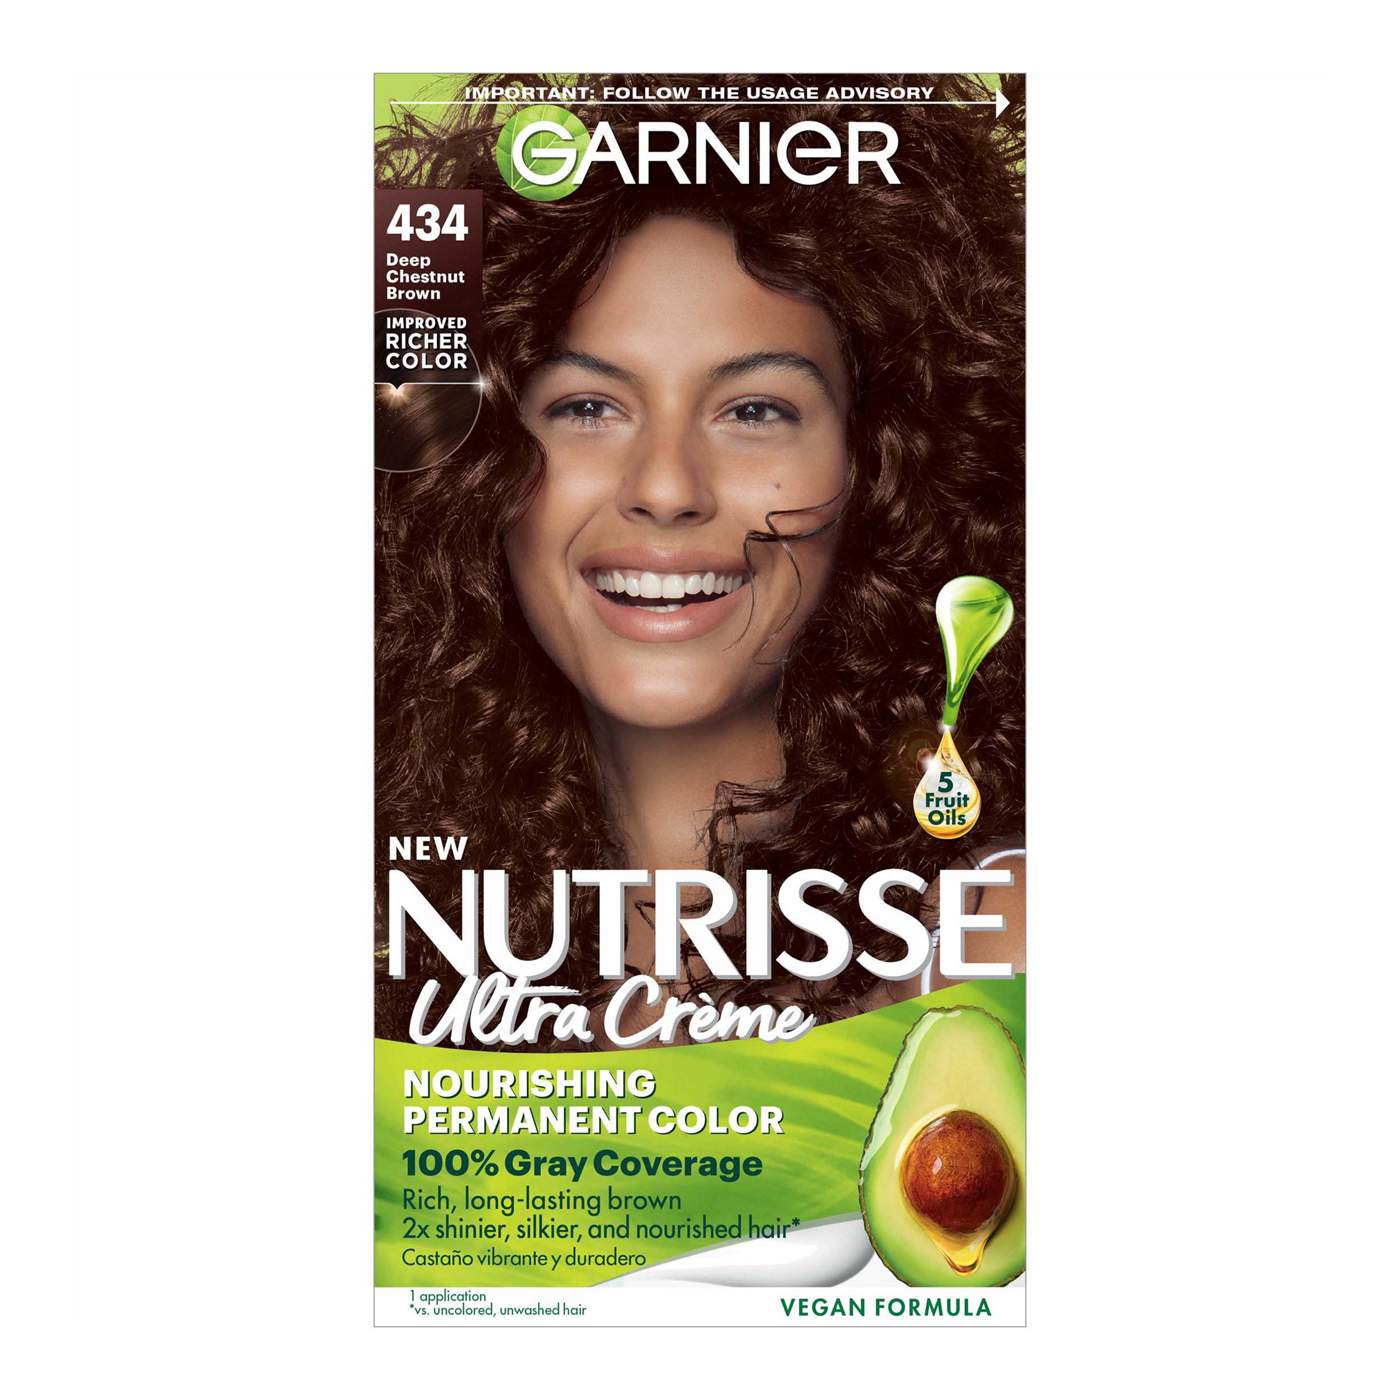 Garnier Nutrisse Nourishing Hair Color Creme - 434 Deep Chestnut Brown; image 1 of 4